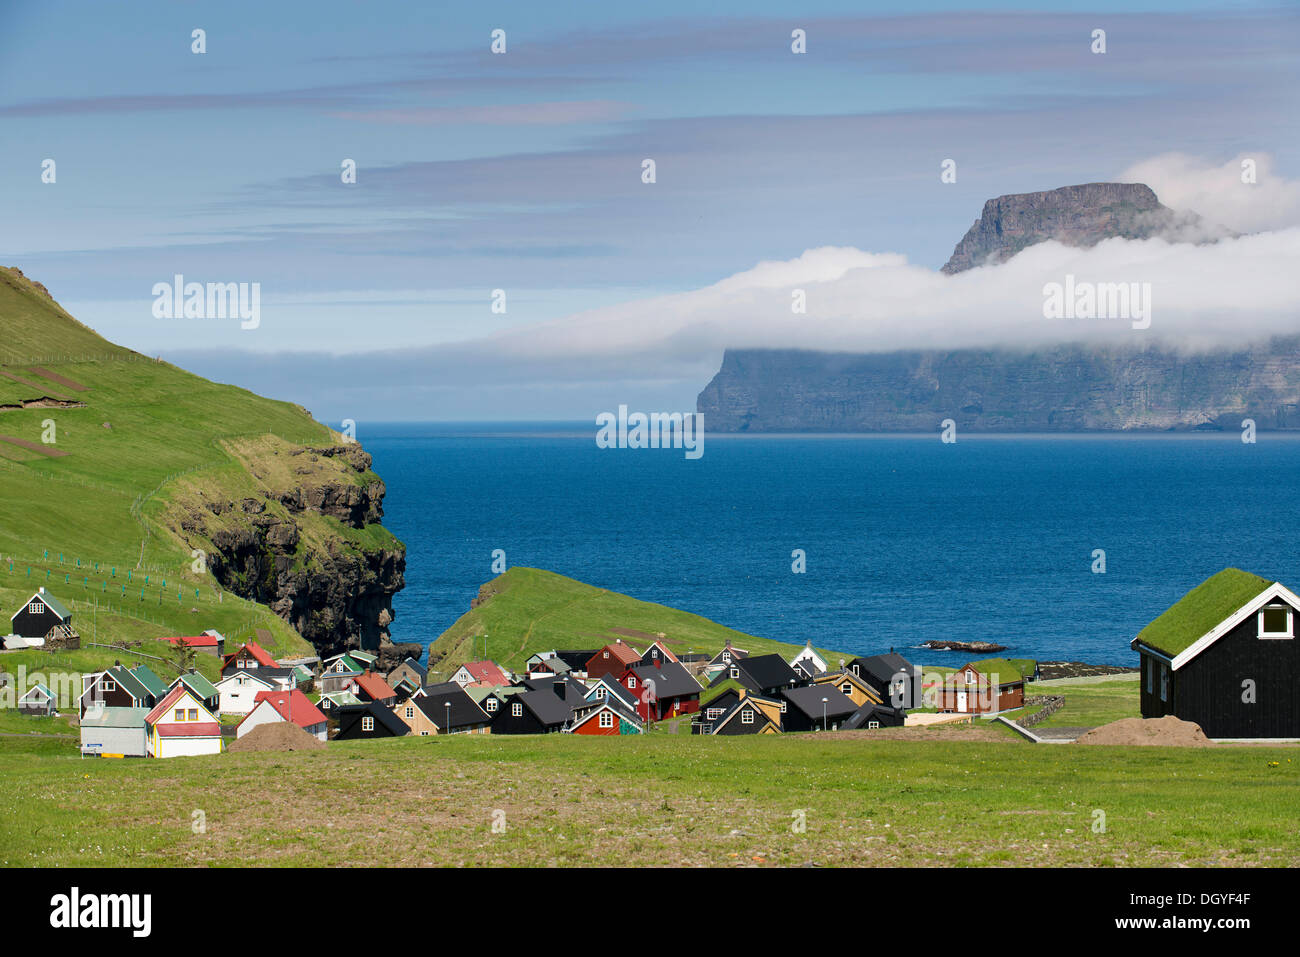 Villaggio con le tipiche case colorate, Kalsoy isola sul retro, Gjogv, Eysturoy, Isole Faerøer, Danimarca Foto Stock